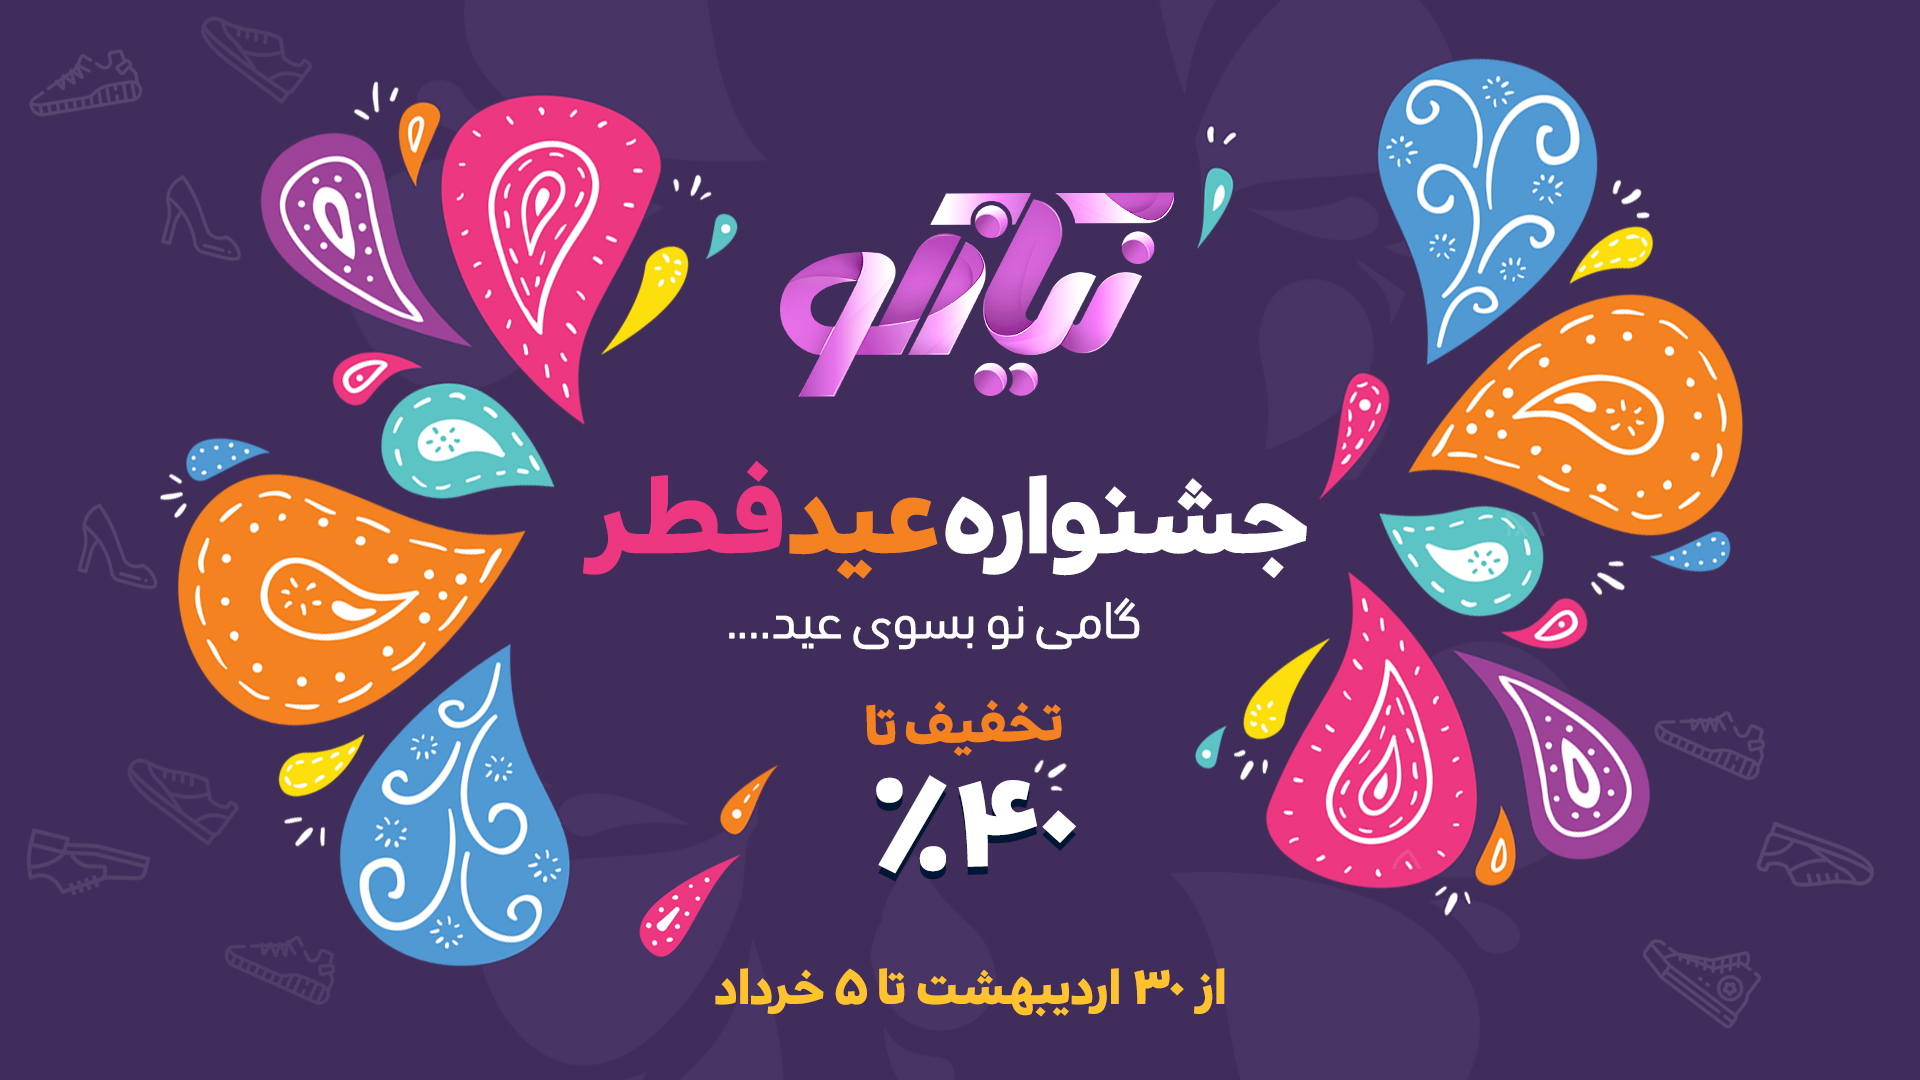 جشنواره فروش عید فطر نیازکو